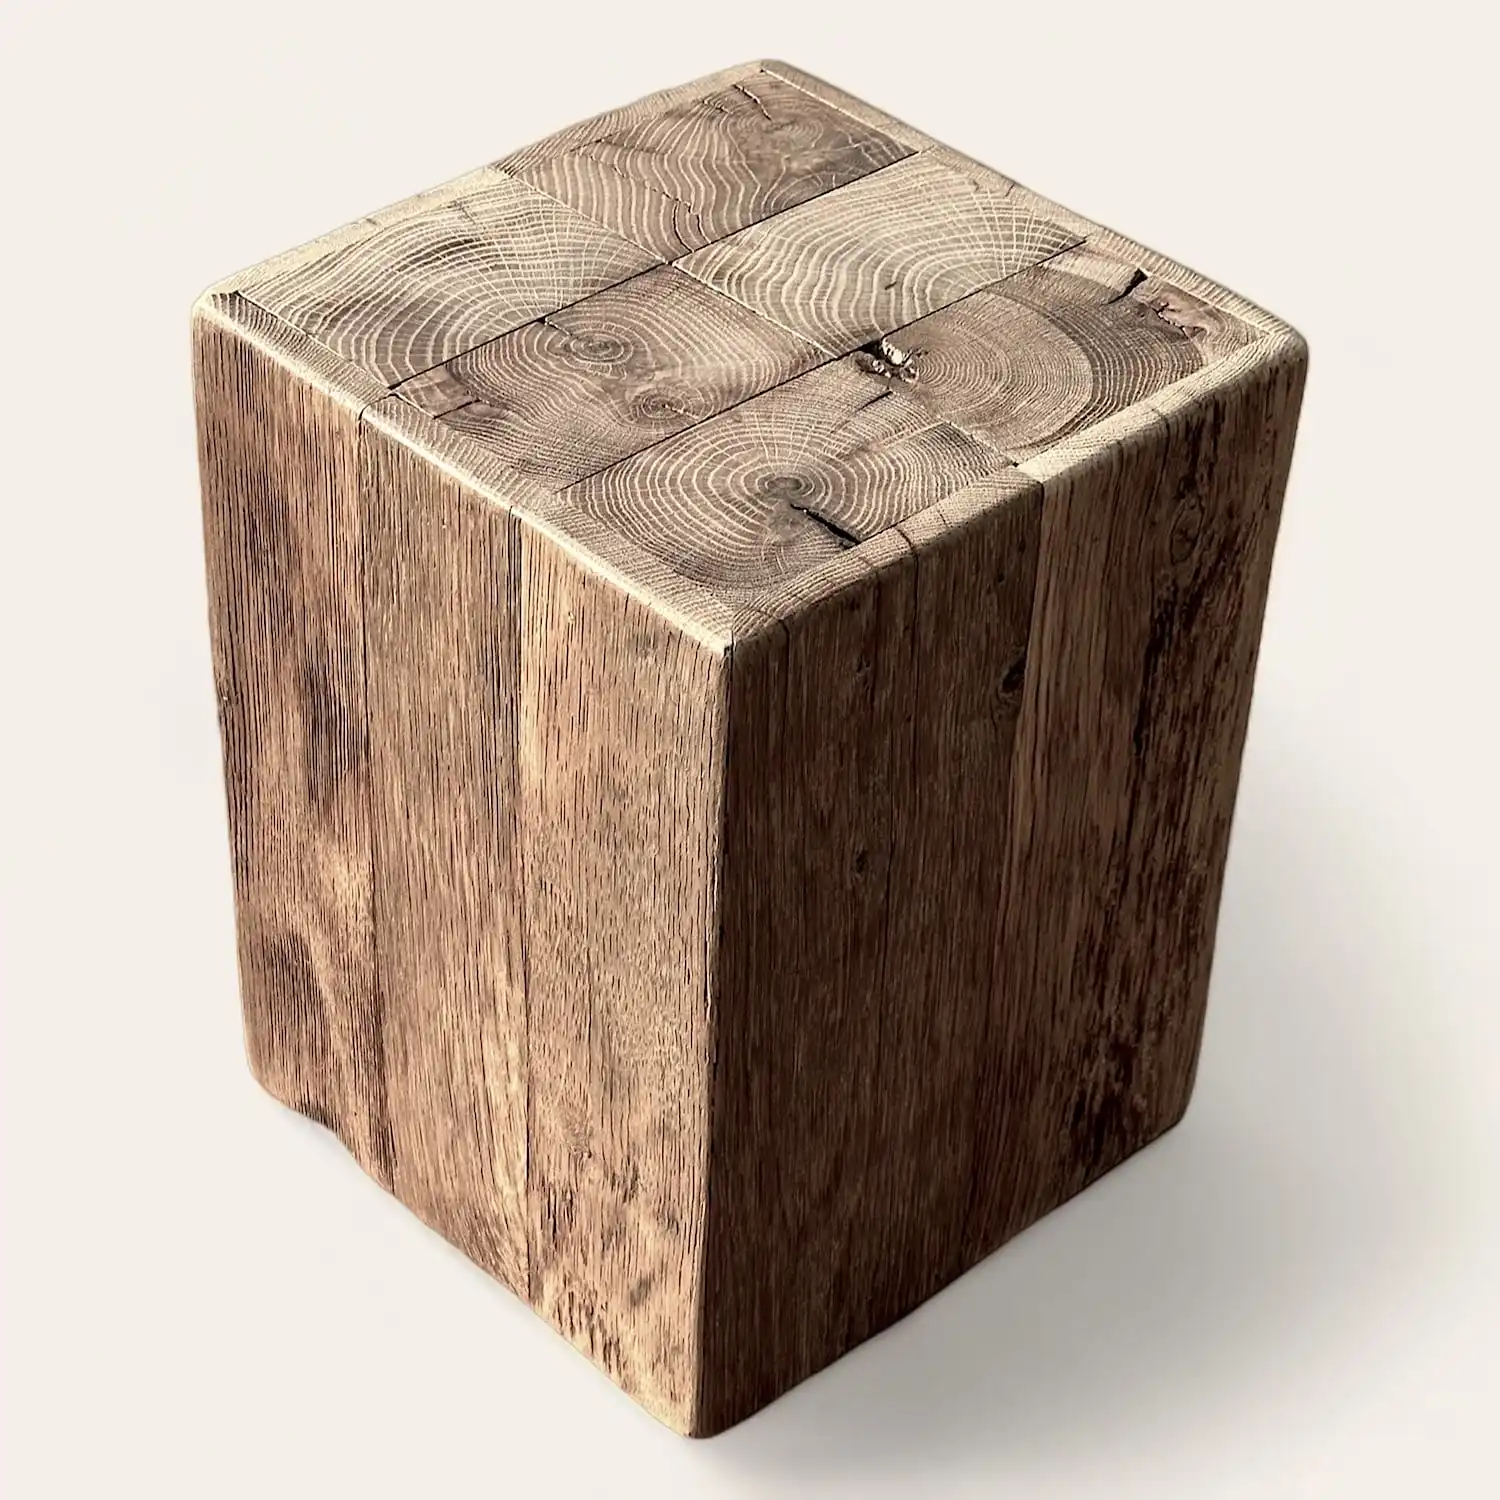  Un cube en bois ancien sur fond blanc. 